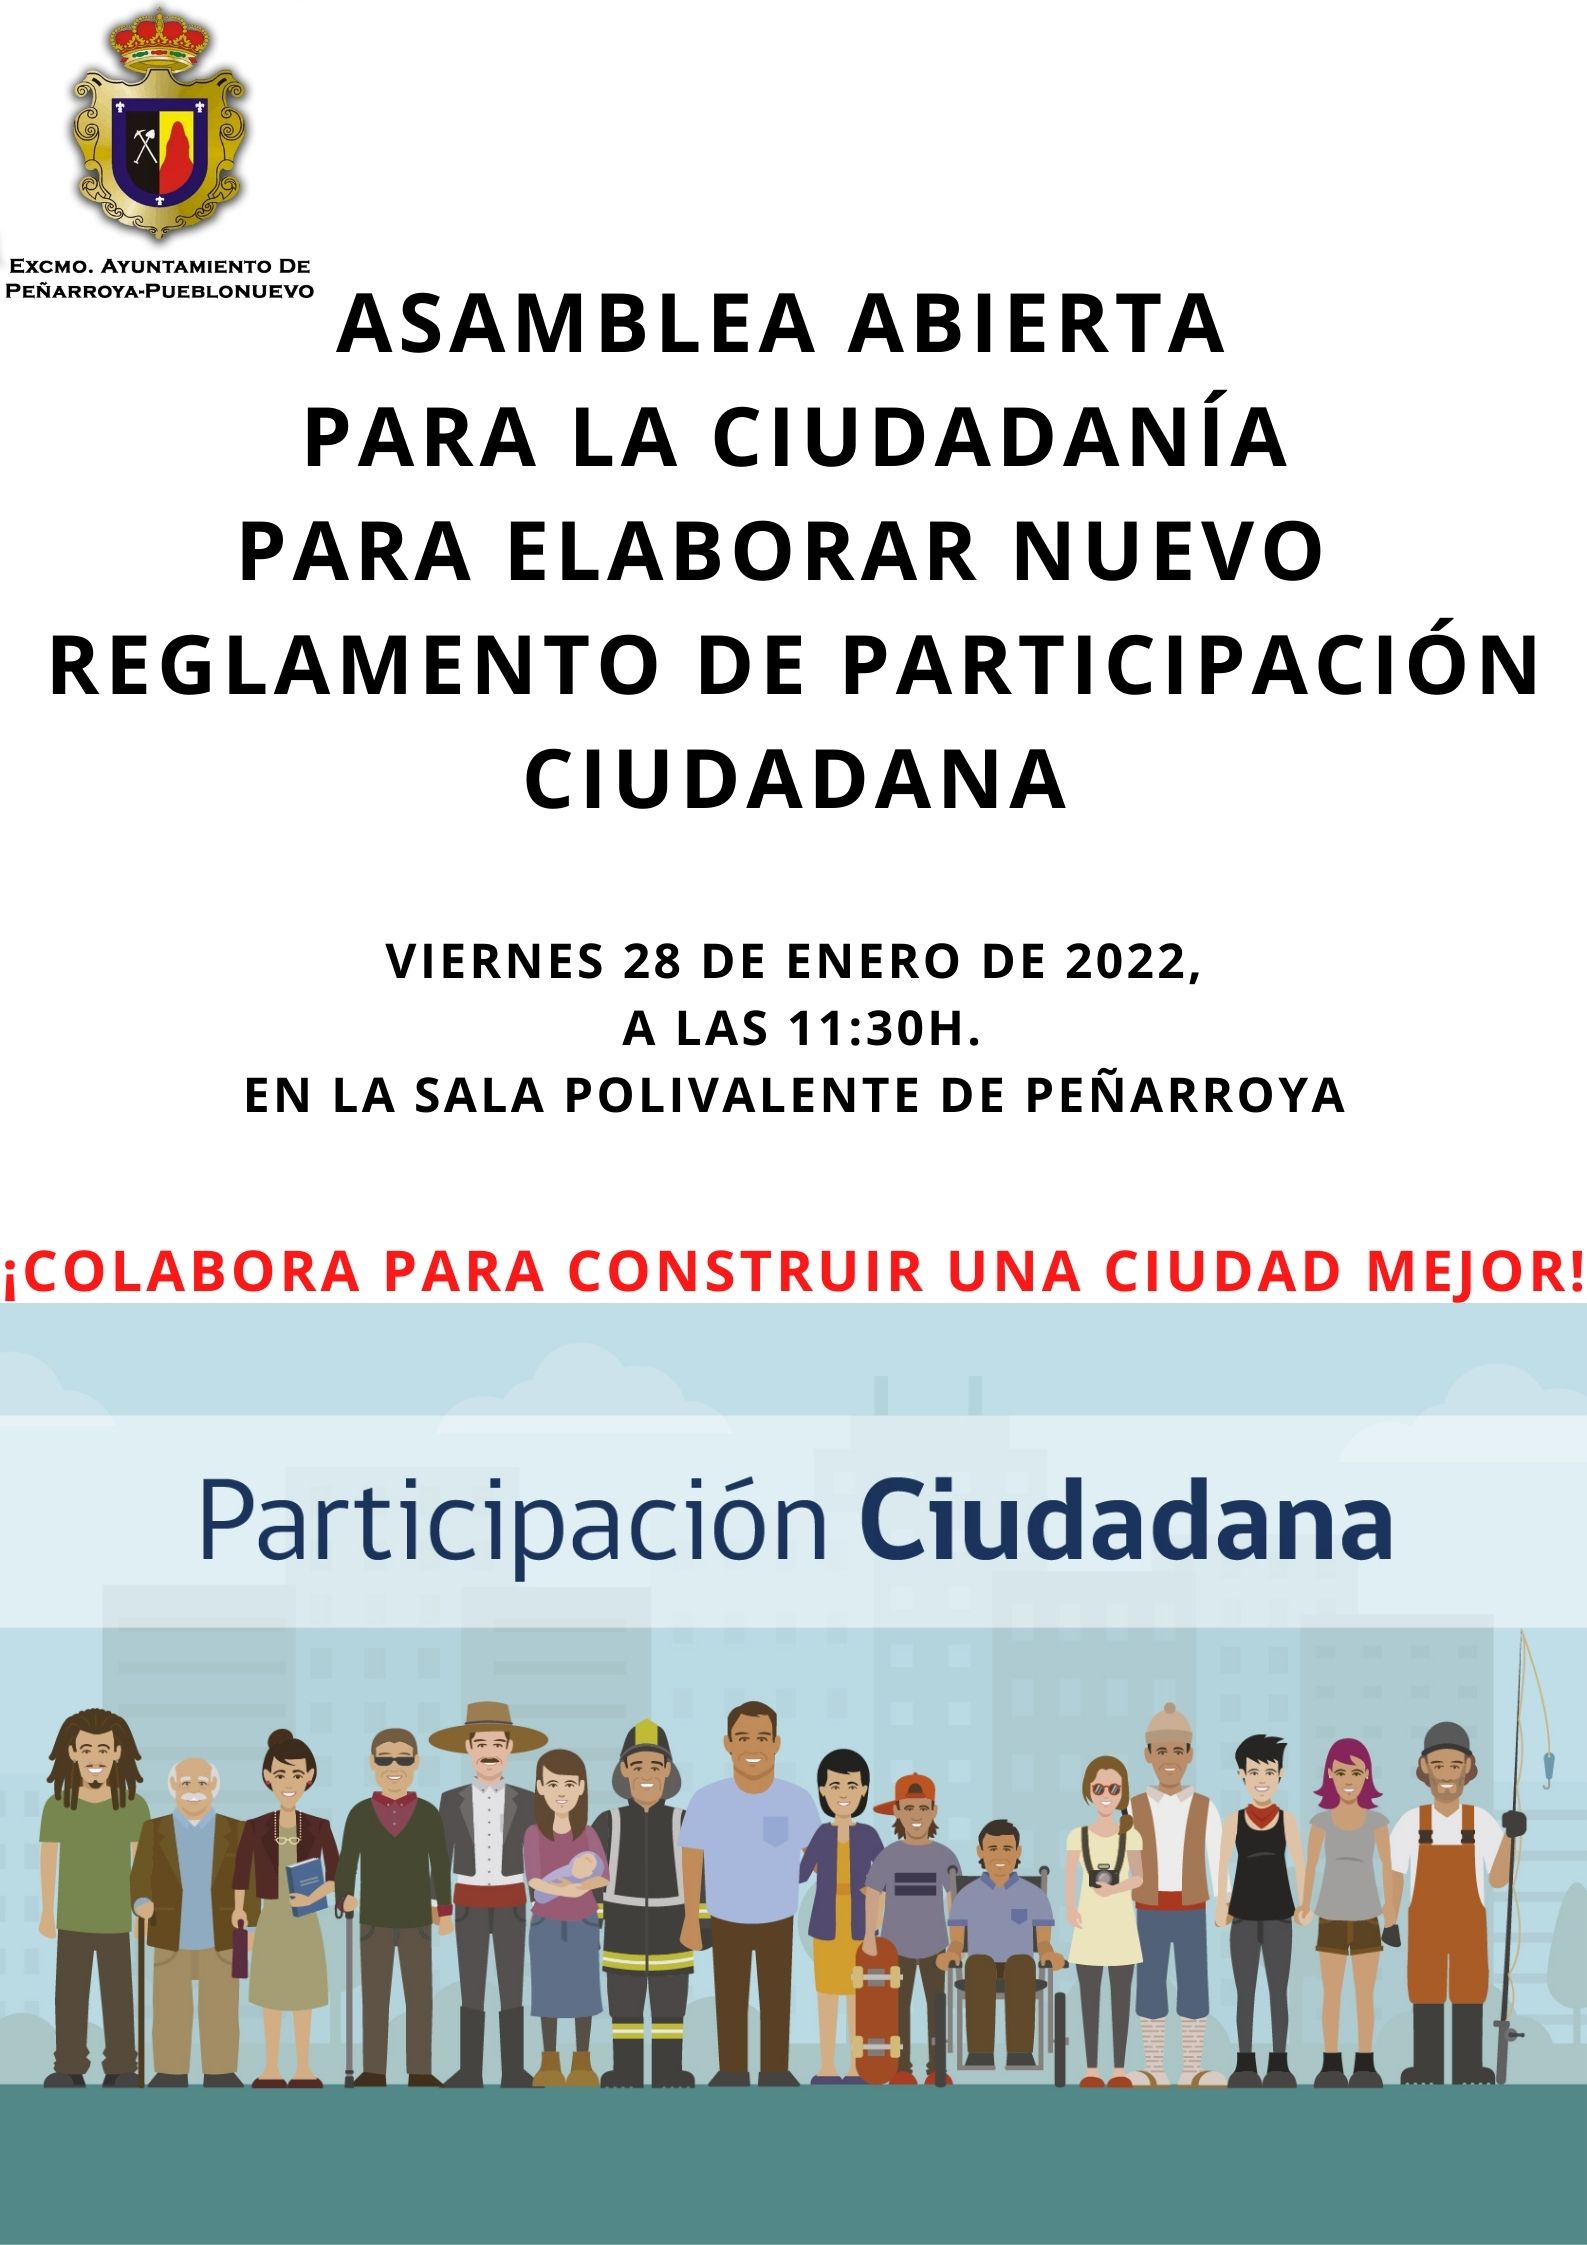 Asamblea abierta a la ciudadanía para elaborar nuevo reglamento de participación ciudadana